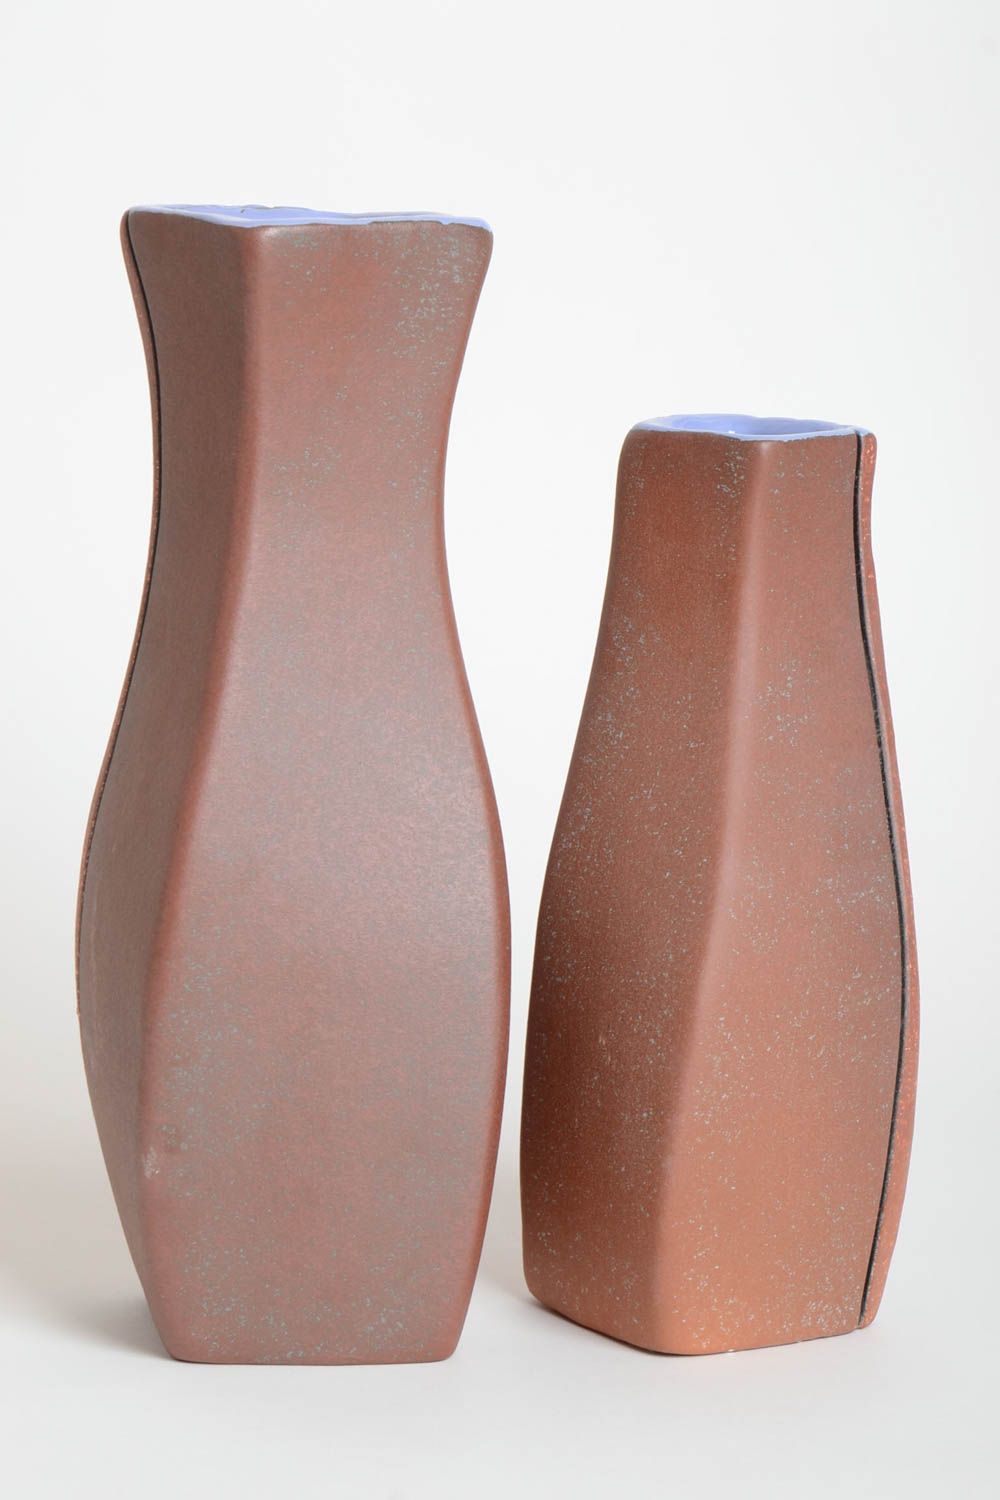 12 inches ceramic handmade vase set of 2 pieces 4,5 lb photo 4